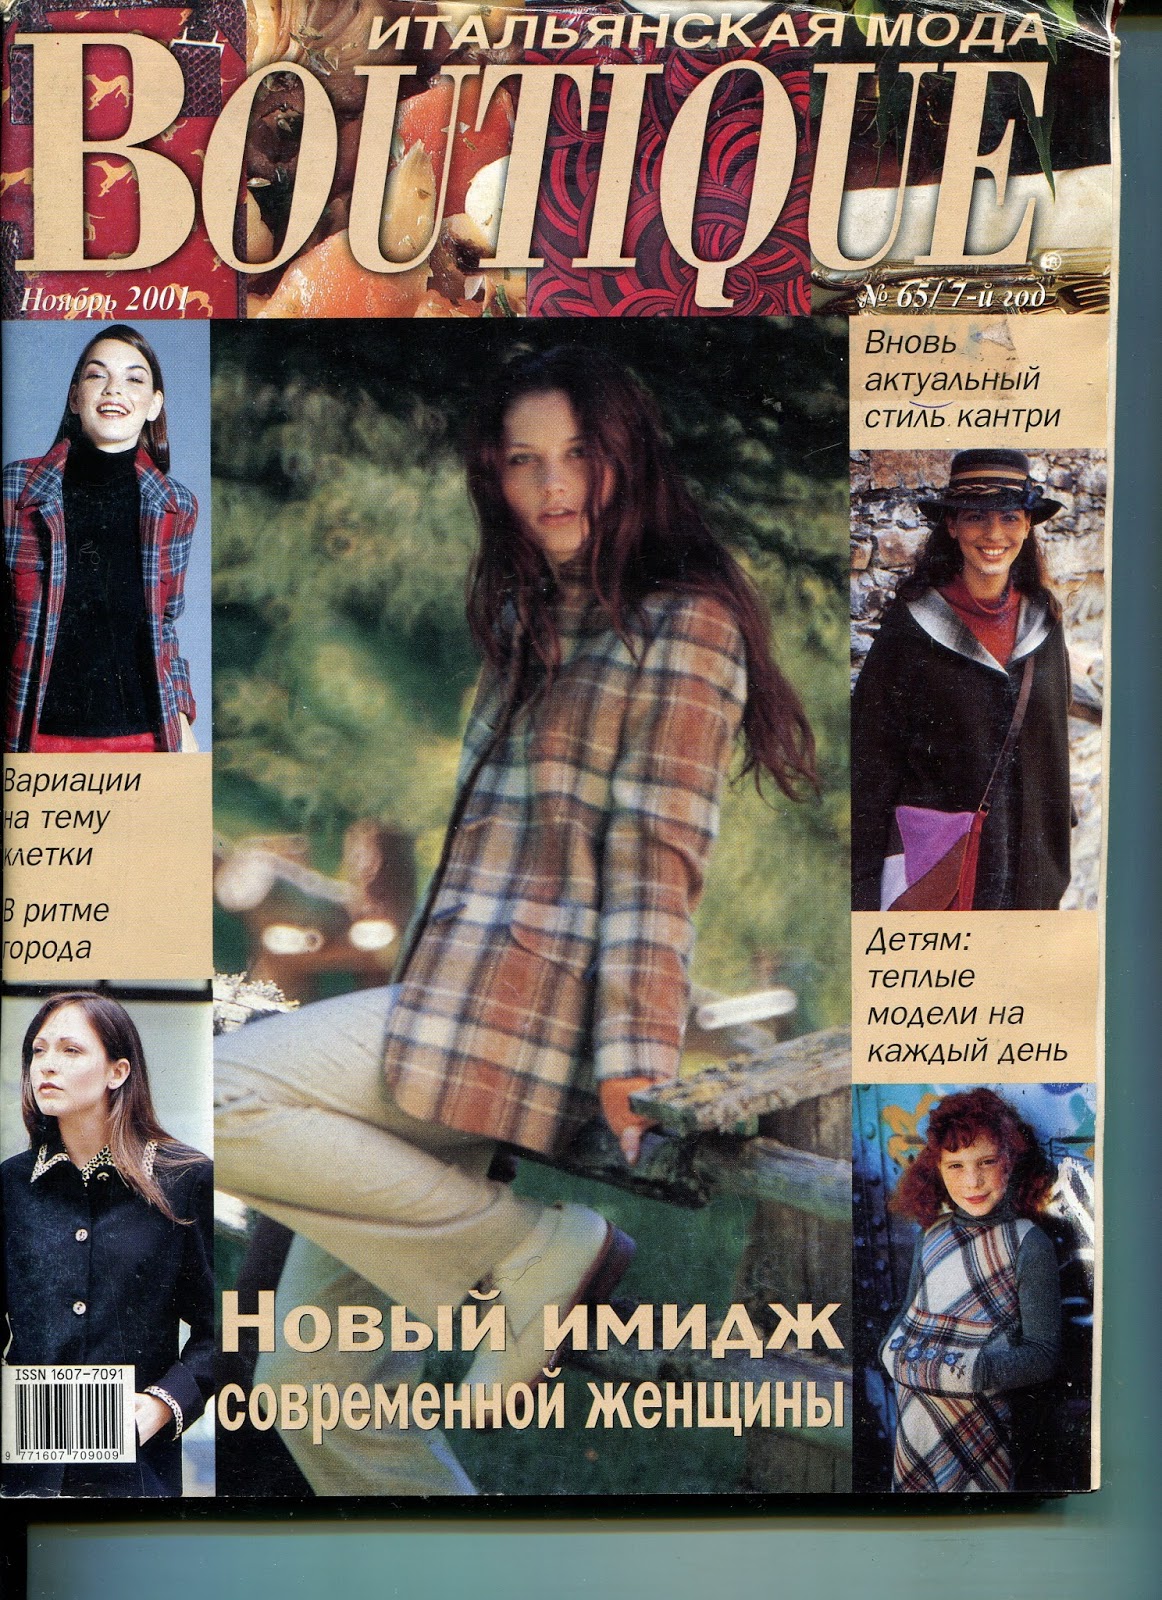 Итальянский журнал boutique. Журнал итальянской моды Boutique. Boutique журнал 1997. Журнал Boutique 2000. Журнал мод бутик.